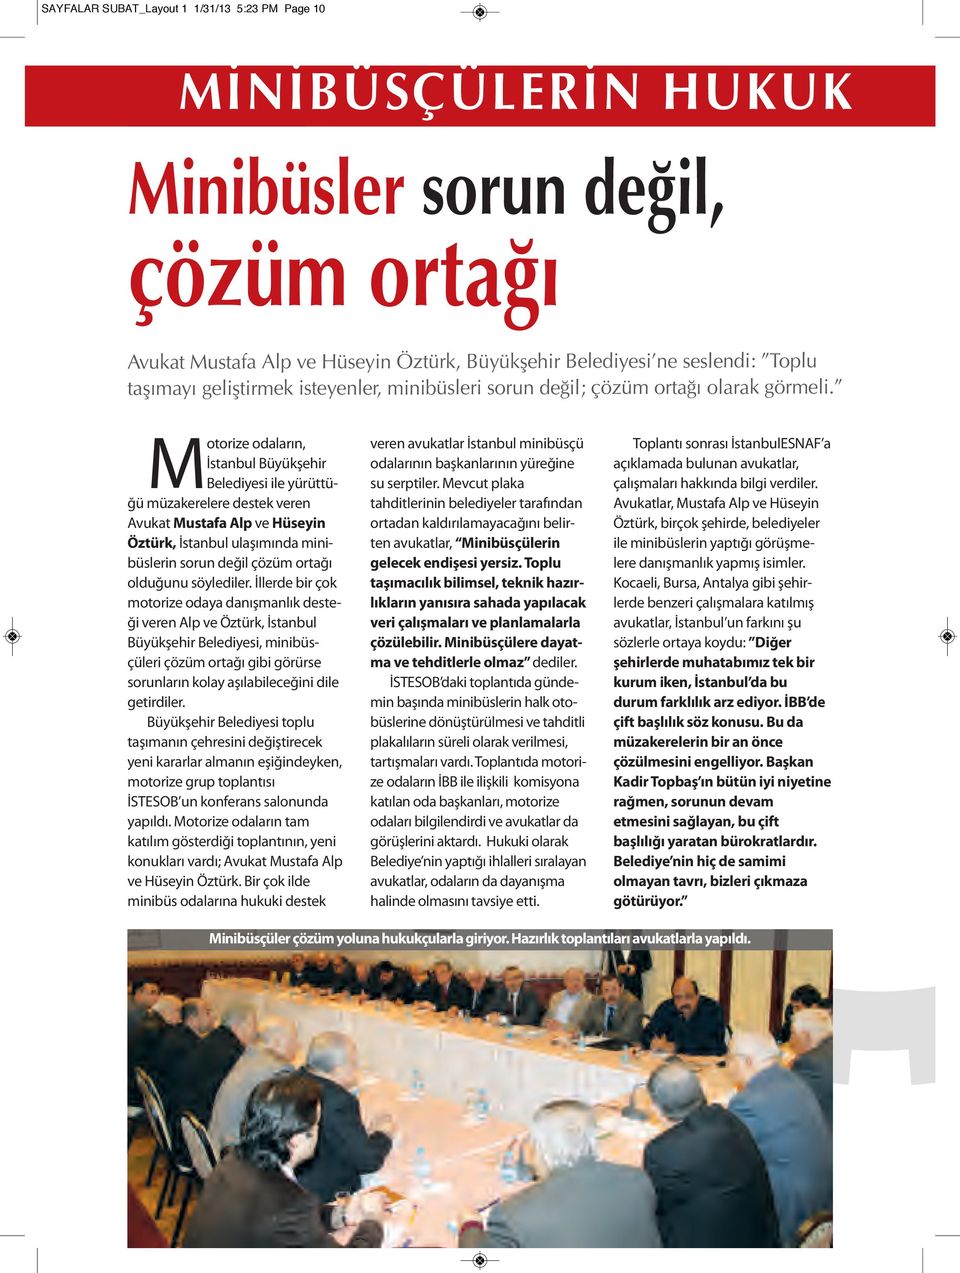 Motorize odaların, İstanbul Büyükşehir Belediyesi ile yürüttüğü müzakerelere destek veren Avukat Mustafa Alp ve Hüseyin Öztürk, İstanbul ulaşımında minibüslerin sorun değil çözüm ortağı olduğunu